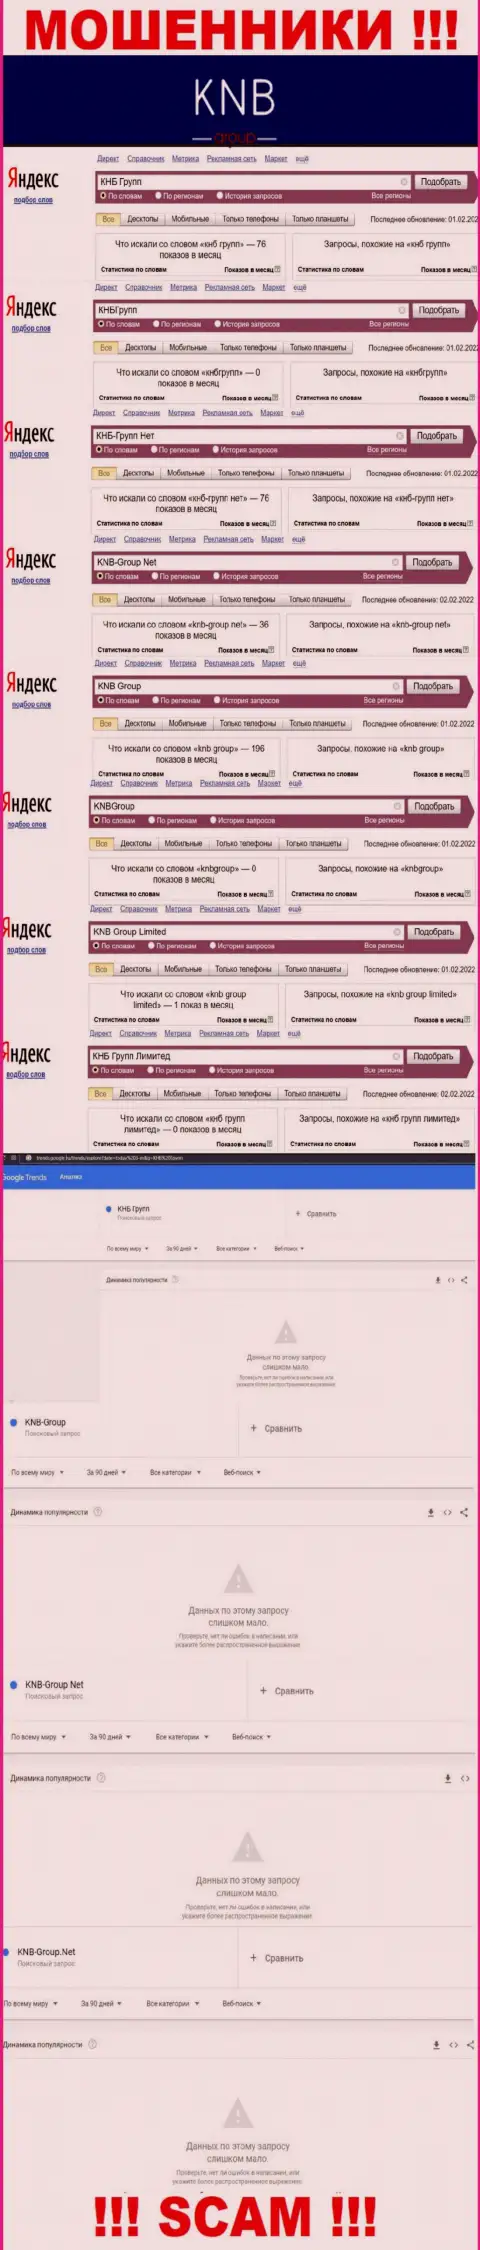 Скрин результата онлайн запросов по жульнической конторе KNB-Group Net